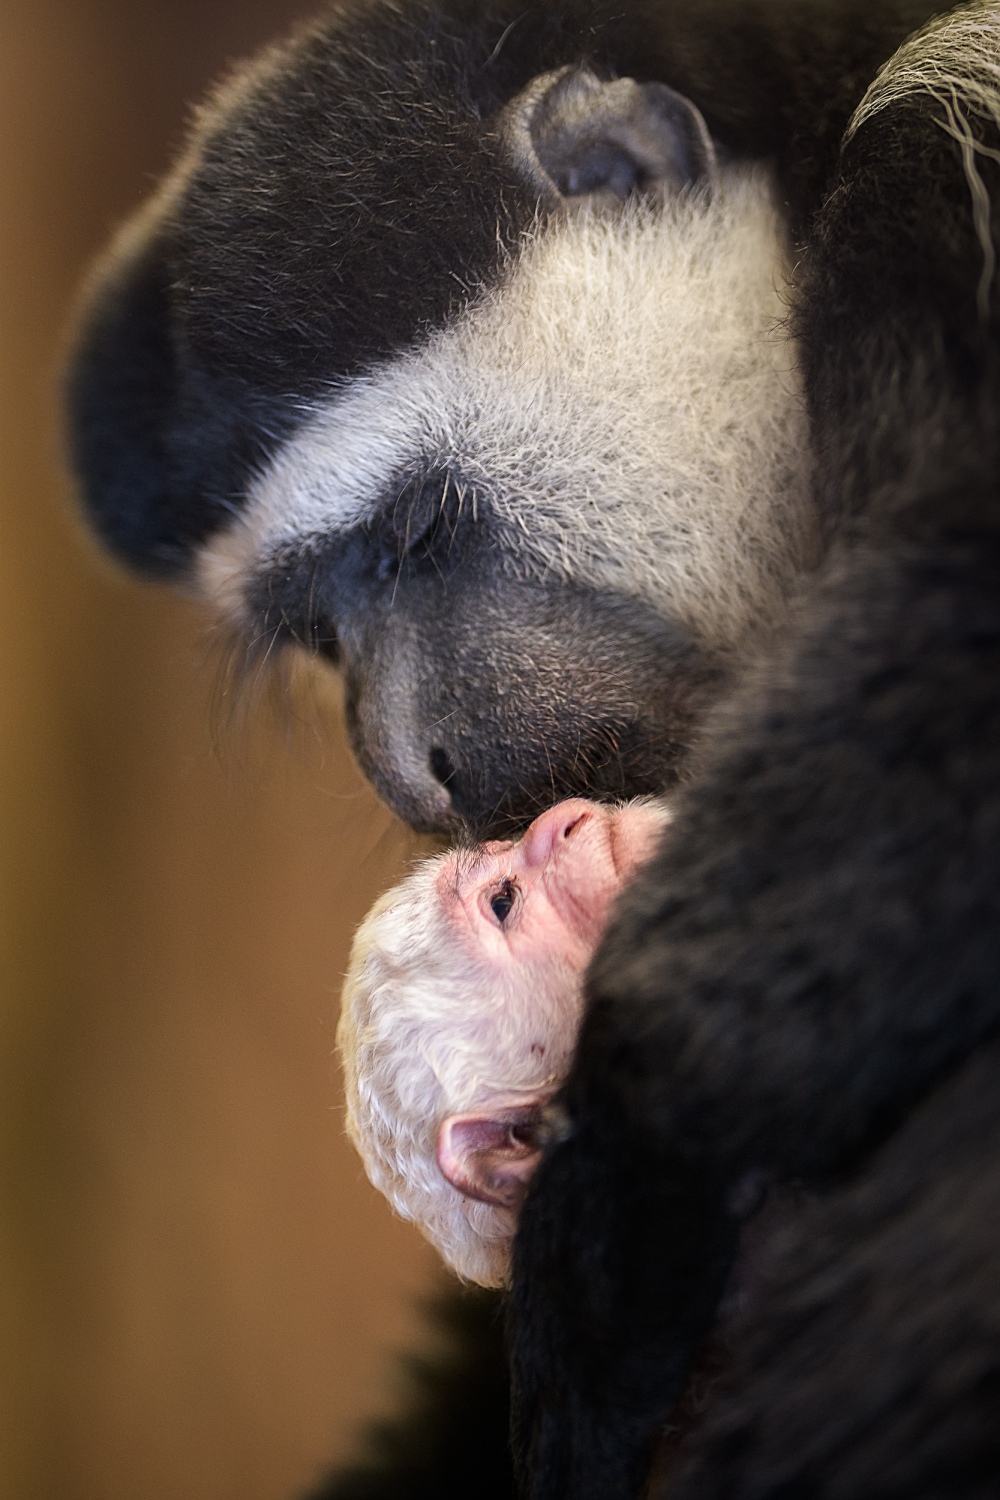 Samice Lucie se i tentokrát projevuje jako zkušená matka, která mláděti věnuje ukázkovou péči. Foto: Petr Hamerník, Zoo Praha.